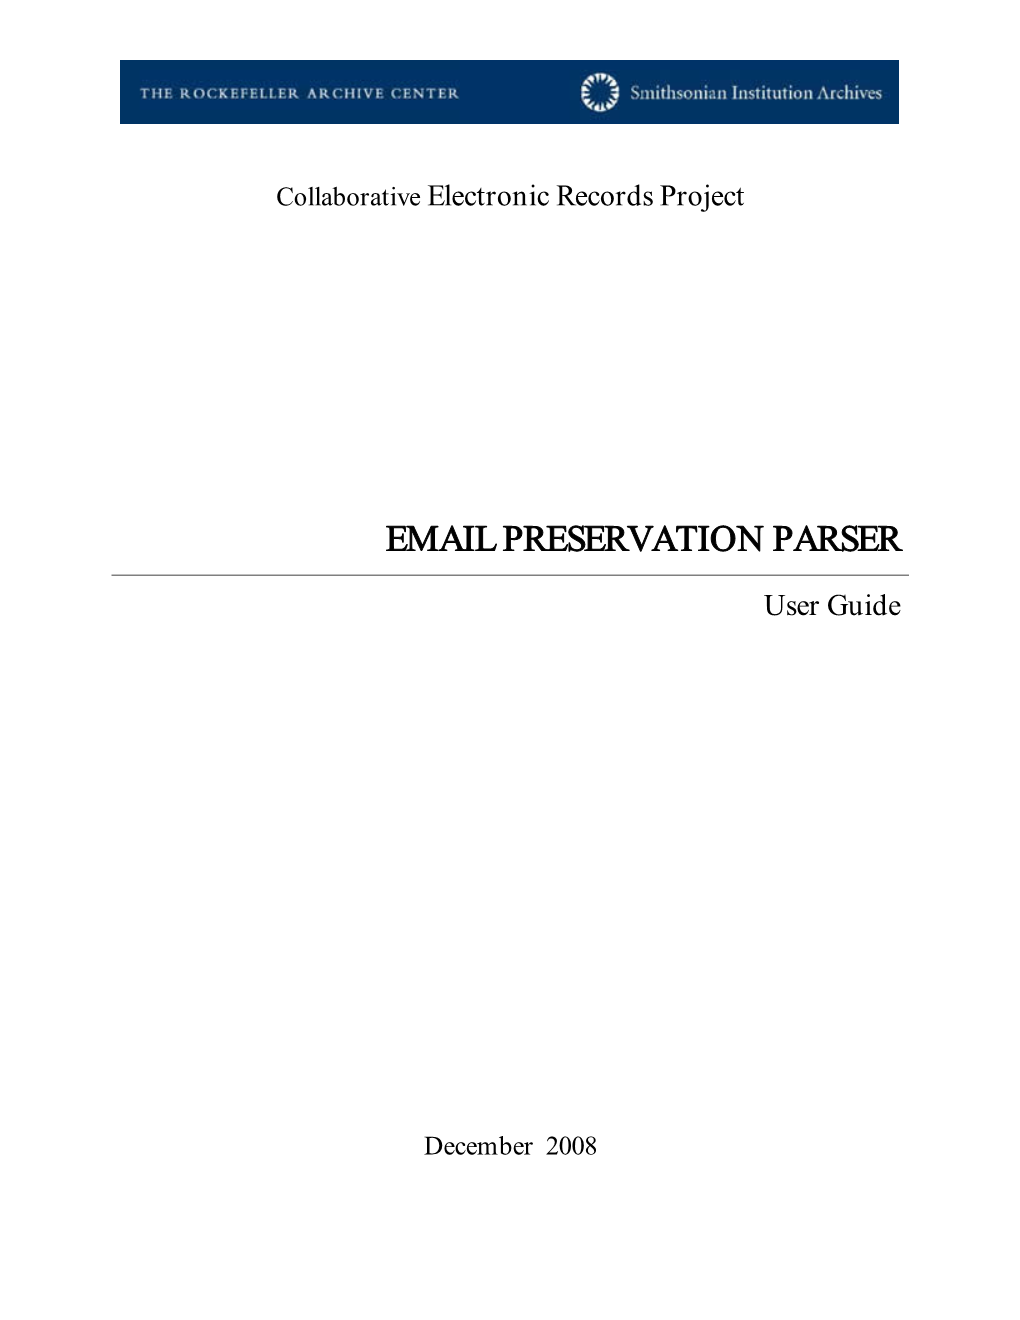 Email Preservation Parser User's Guide